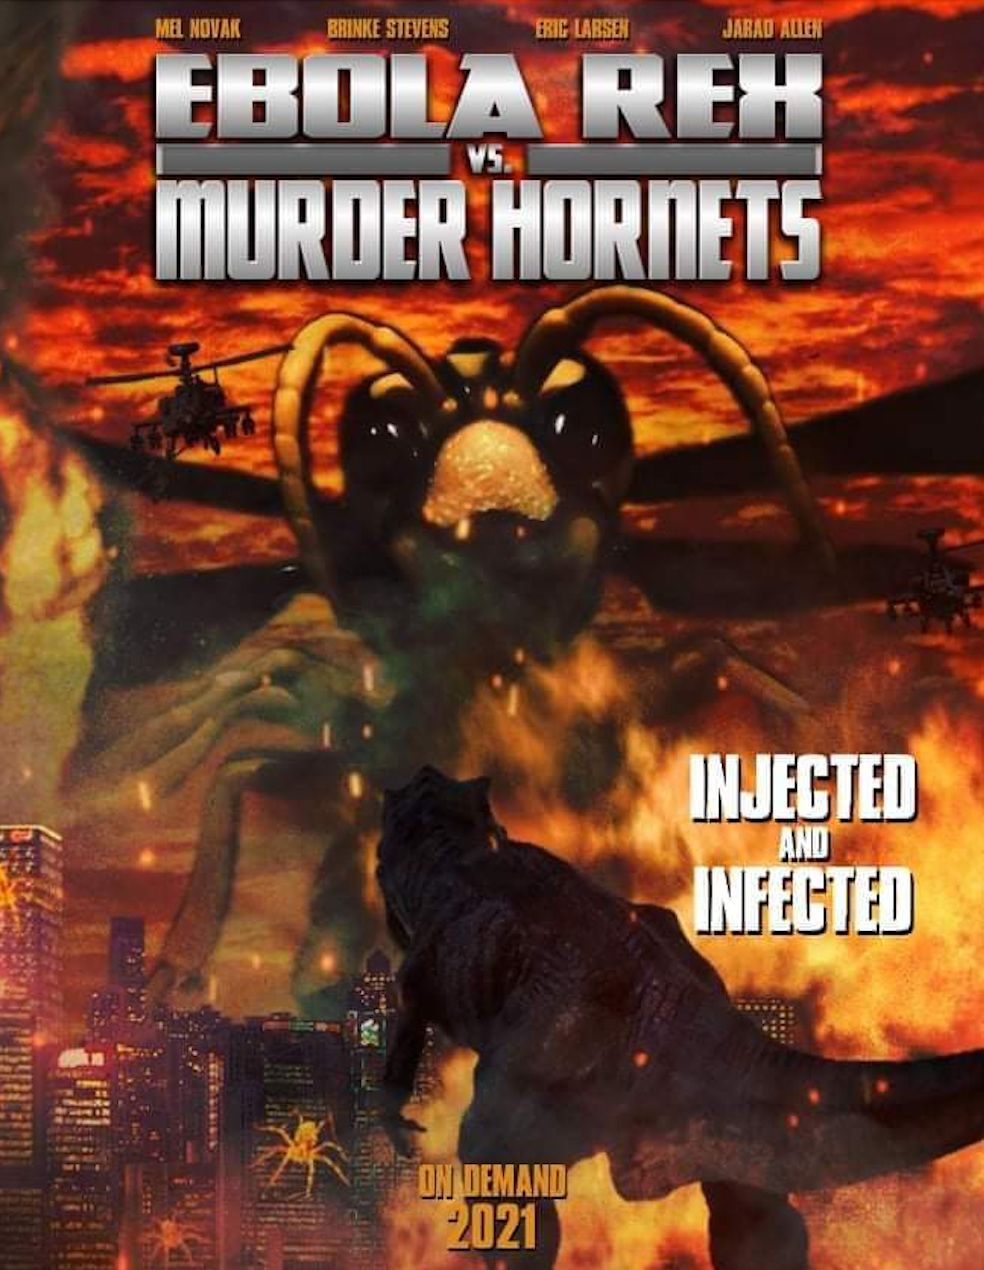 Ebola Rex vs Murder Hornets poster